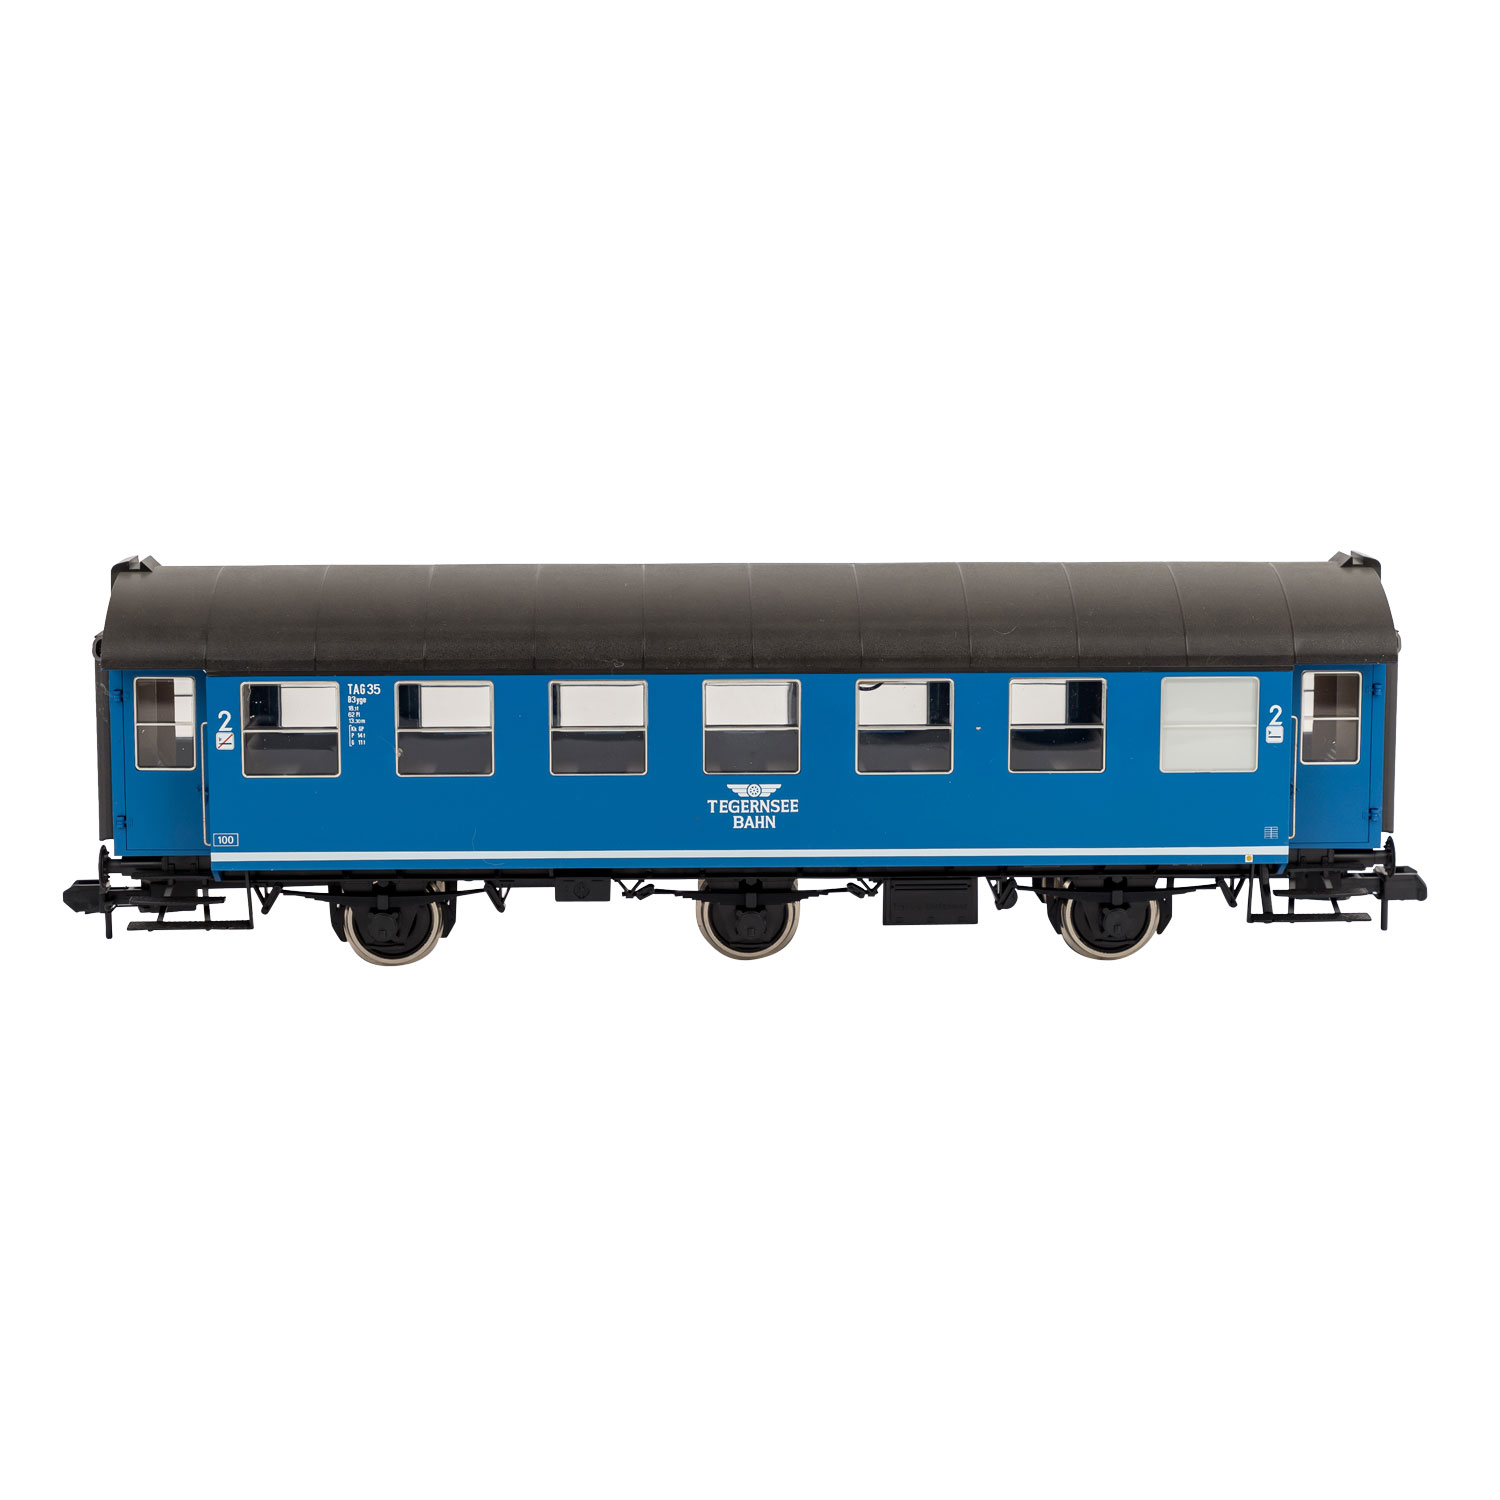 MÄRKLIN Personenwagen-Set "Tegernsee-Bahn" 5409, Spur 1,blau, 2 Personenwg., 2.Kl., - Image 4 of 5